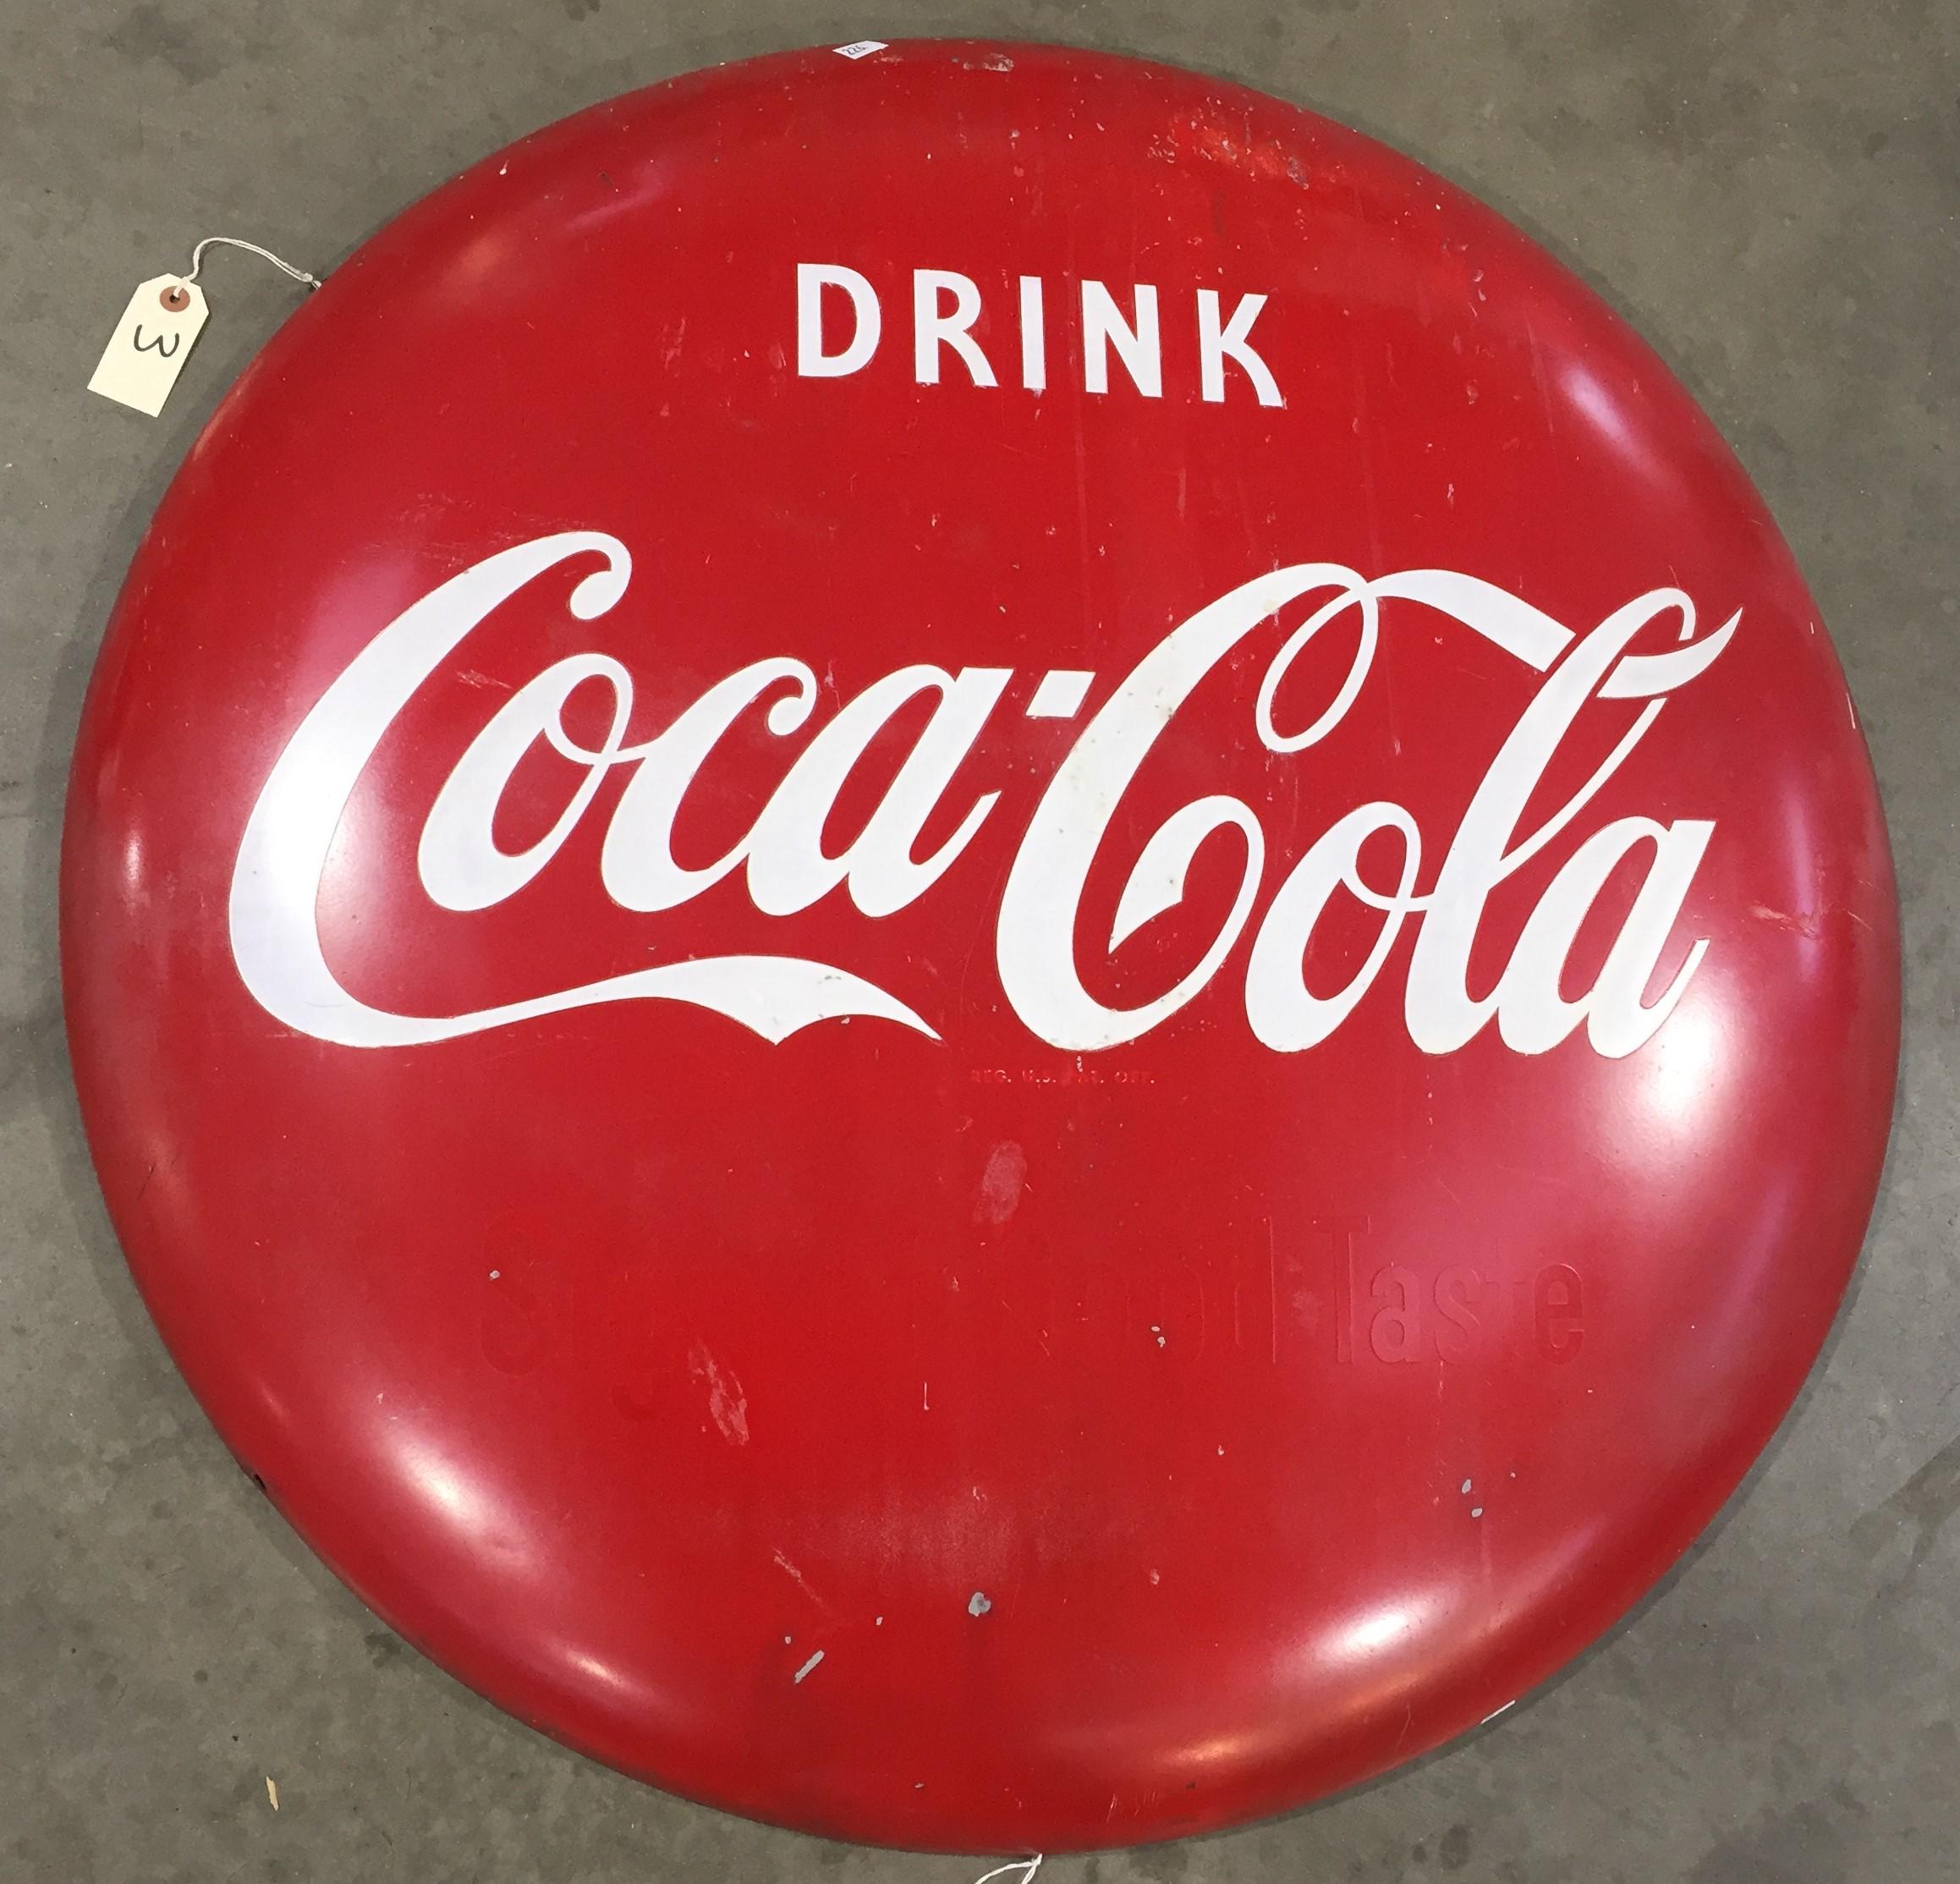 36" Dome "Coca-Cola" Button Sign